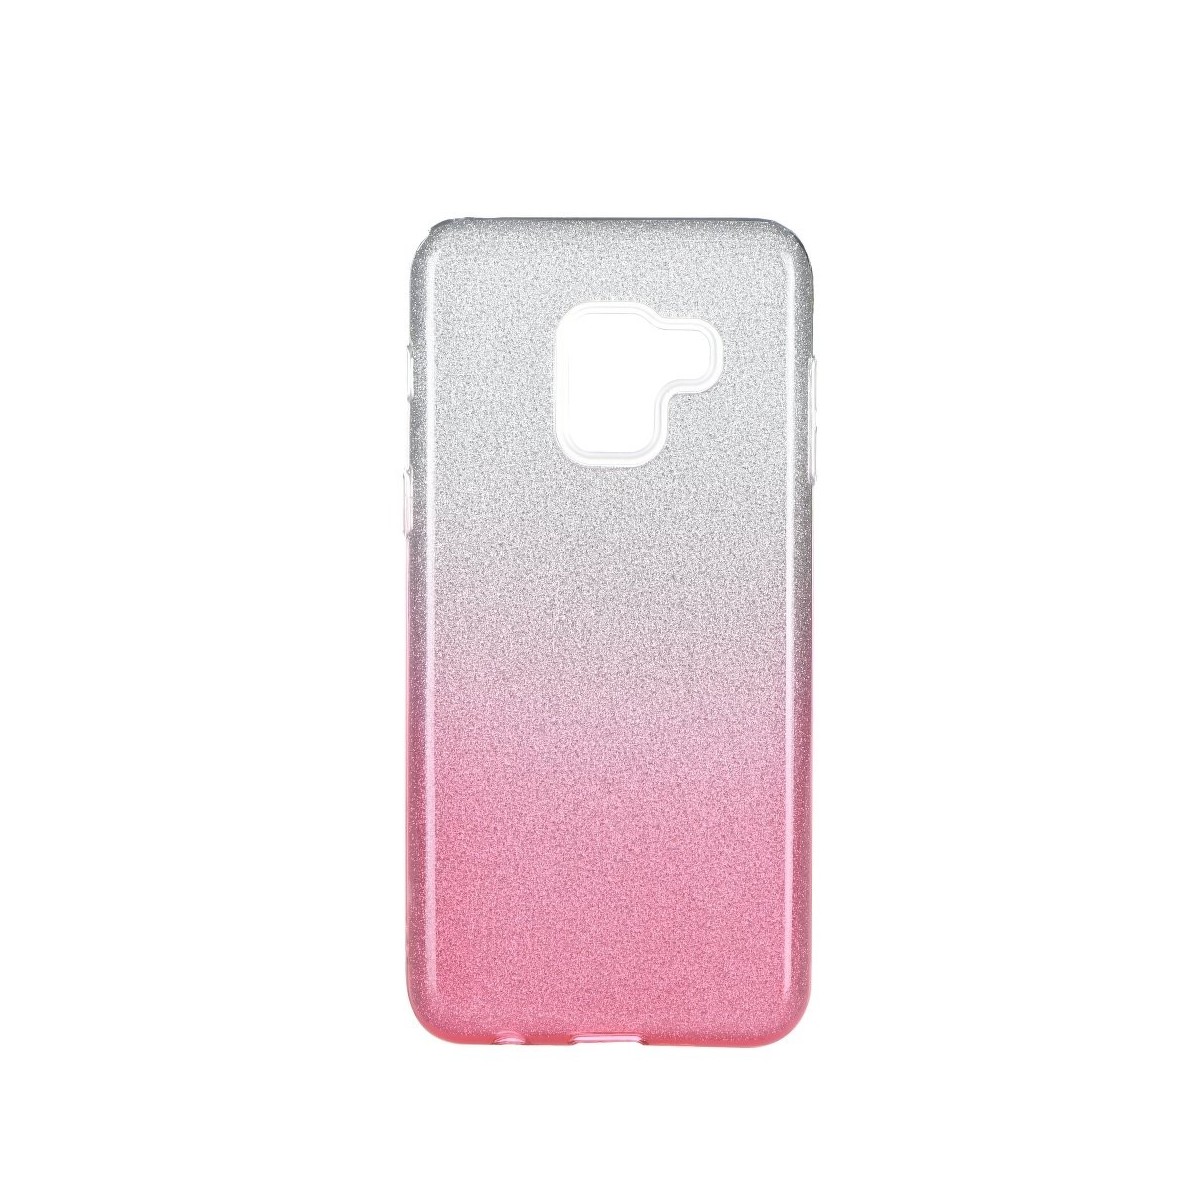 Coque Galaxy A8 (2018) à paillettes roses et argentées - Kaku